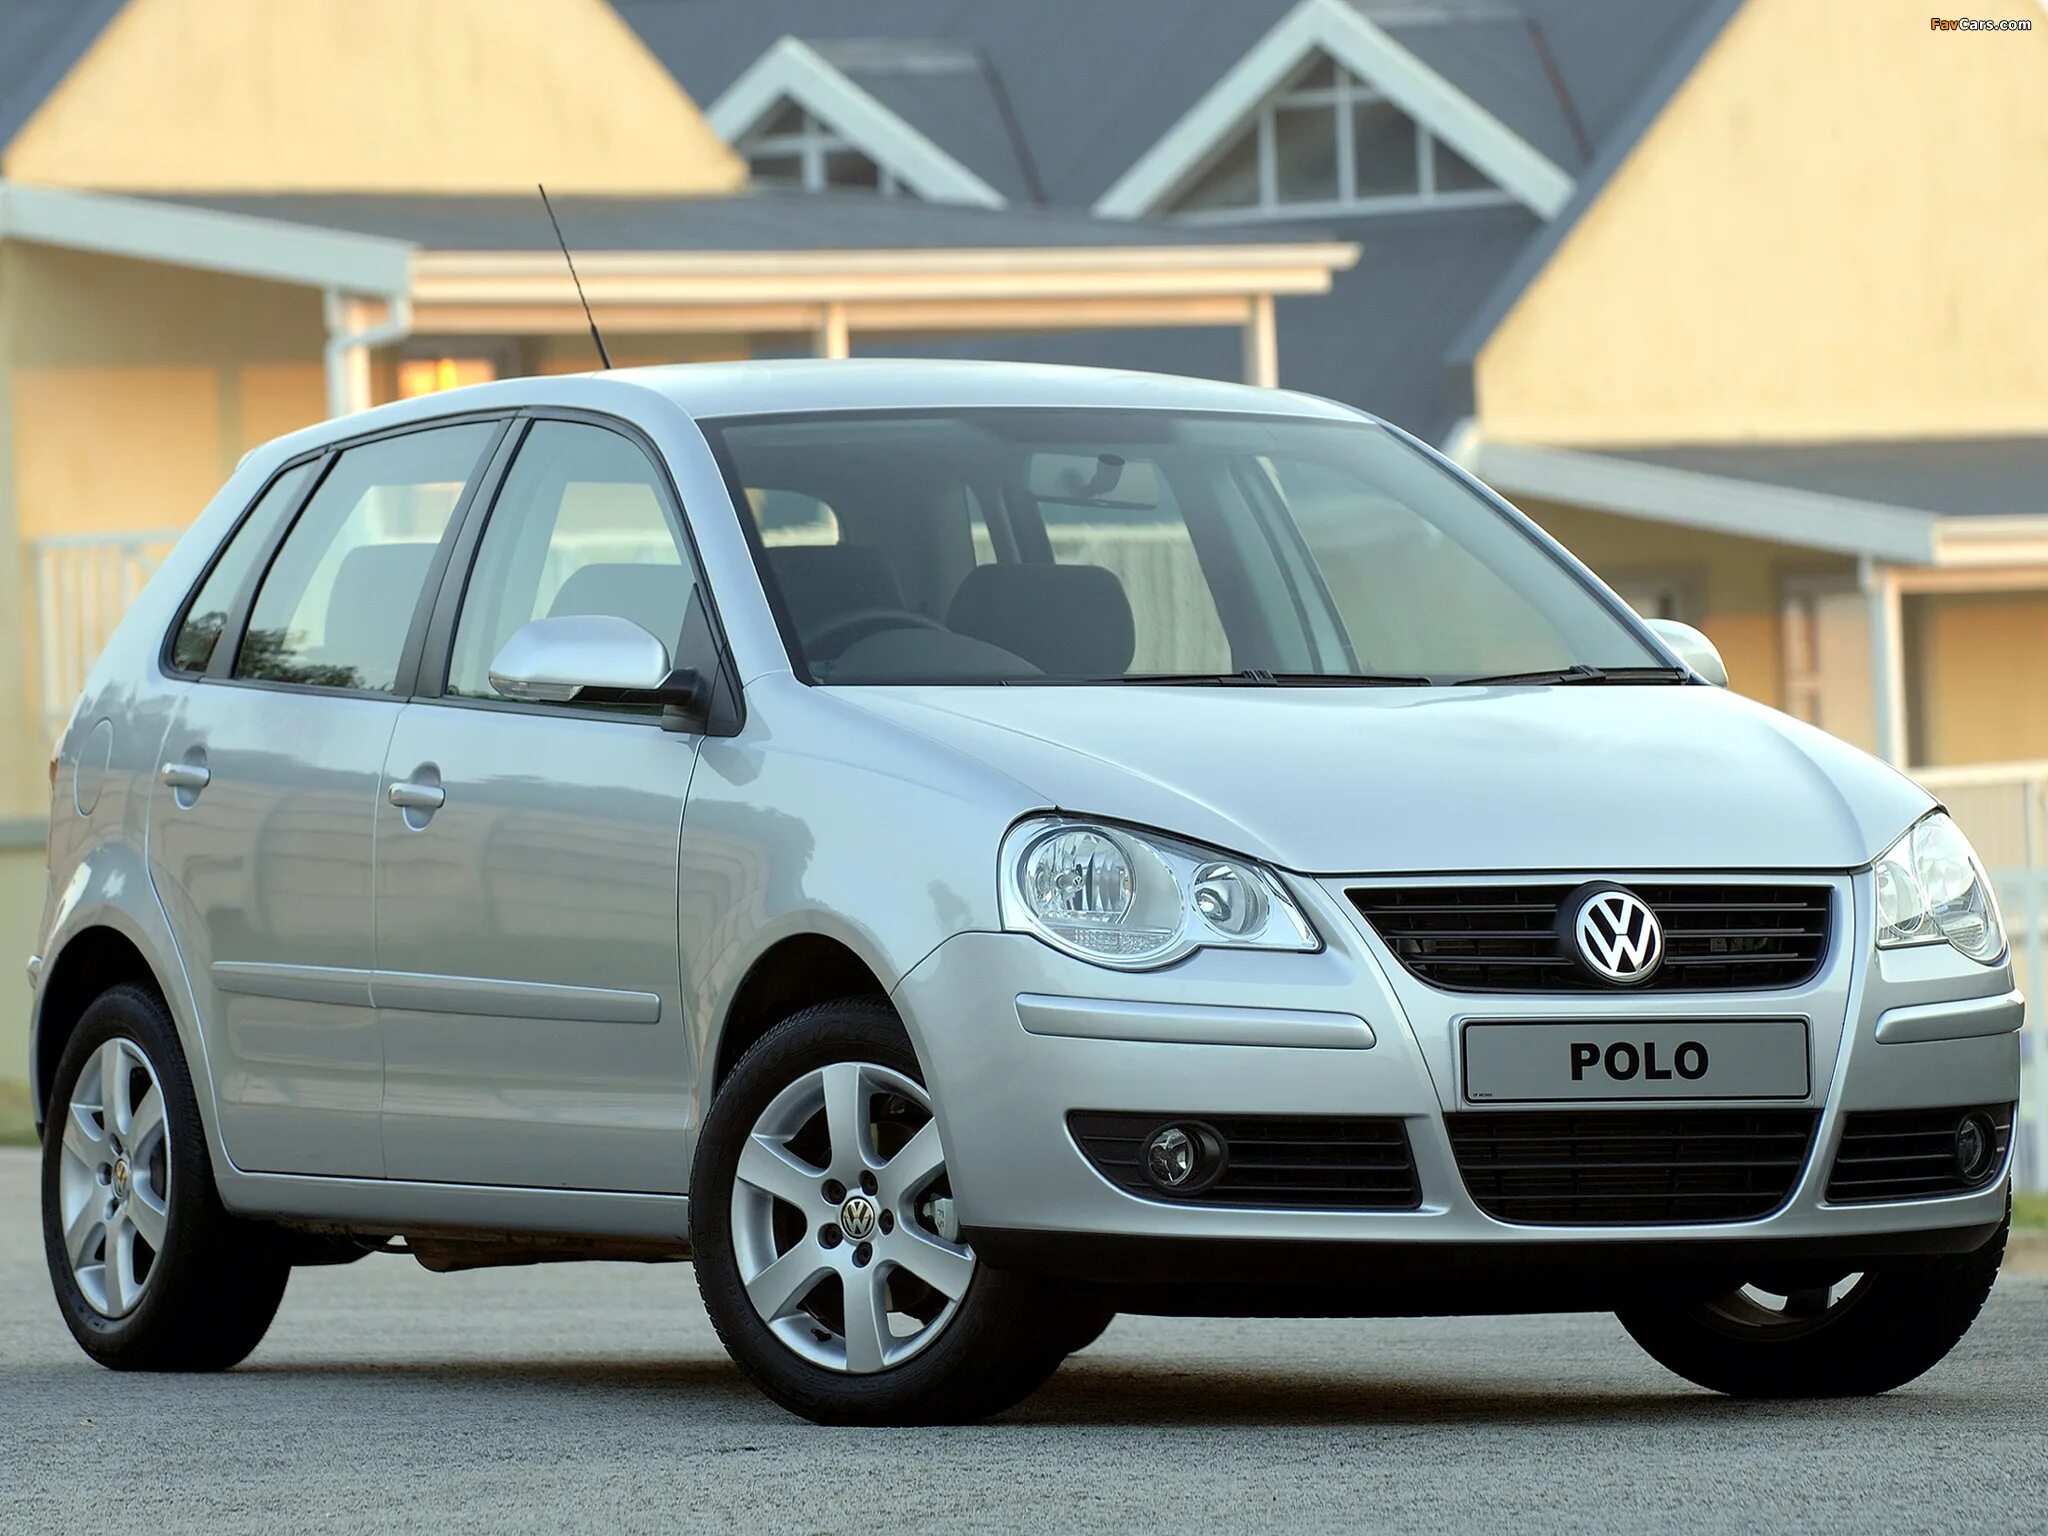 VW Polo 2005. Фольксваген поло 9n3. Фольксваген поло 2005. Volkswagen Polo 2005 года.